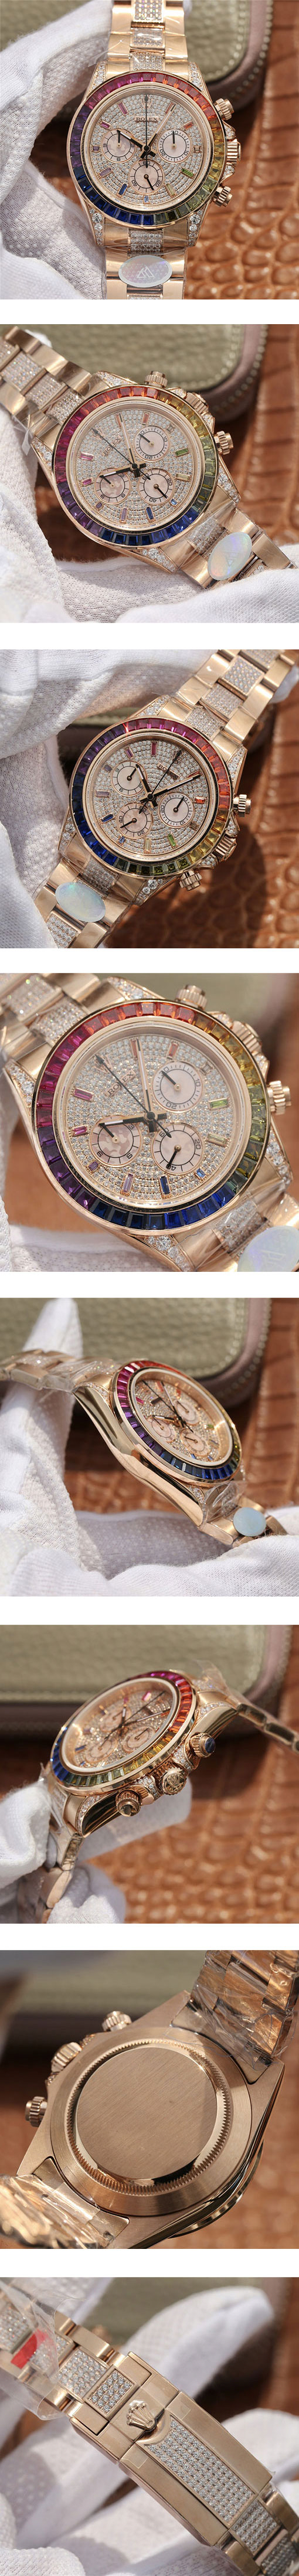 レディース腕時計 ROLEX レプリカ時計コピー デイトナ レインボー パヴェダイヤ 116595RBOW 全面ダイヤ文字盤 7750搭載